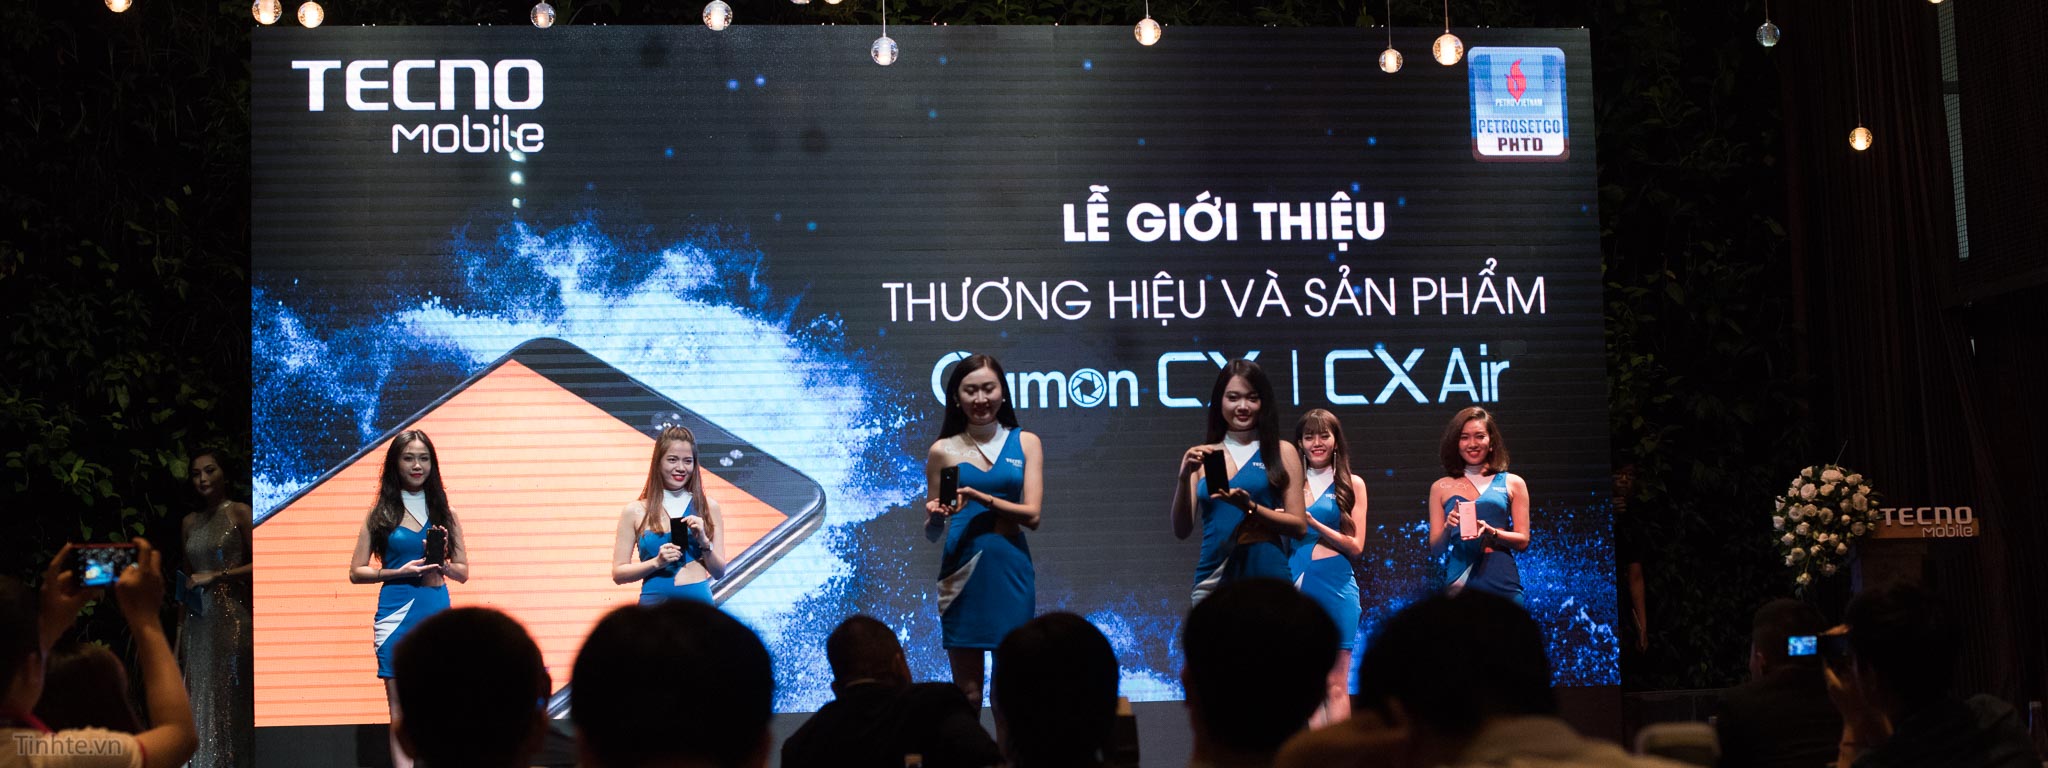 Tecno giới thiệu 4 điện thoại ở Việt Nam, máy có cảm biến vân tay từ 2.55 triệu đồng